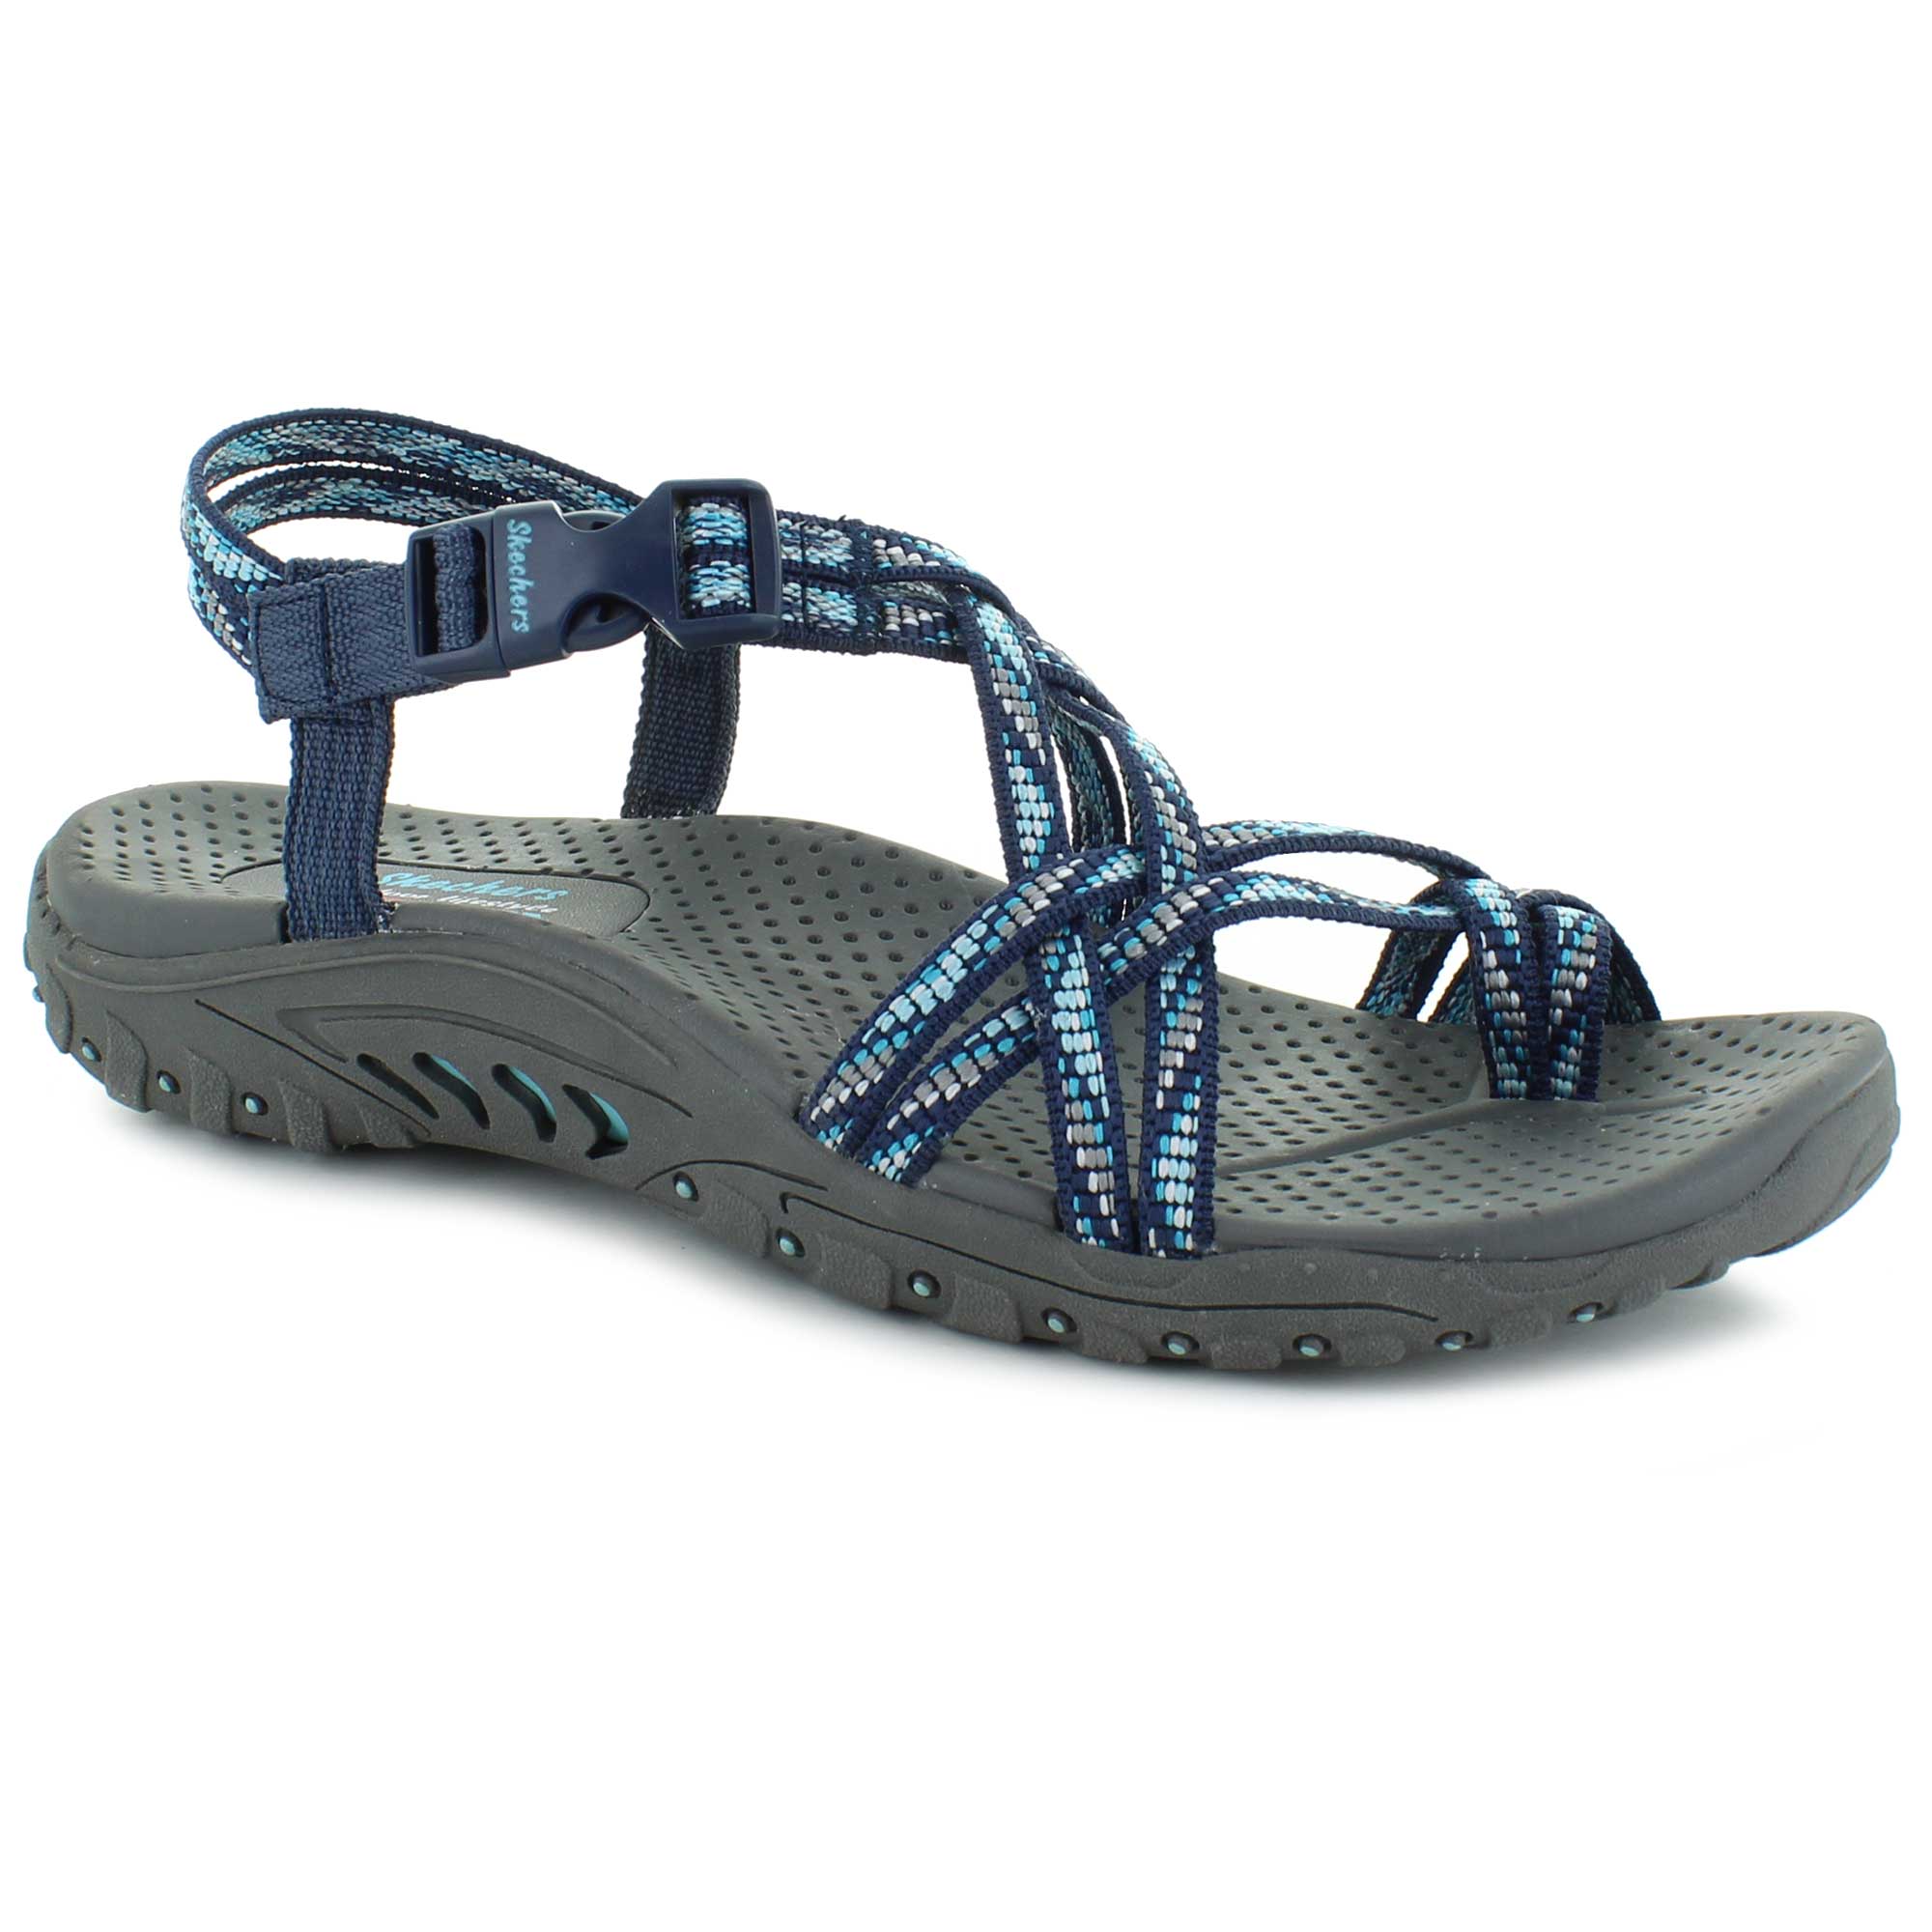 Women's Outdoor/Sport Sandals | Shop Now at SHOE SHOW MEGA